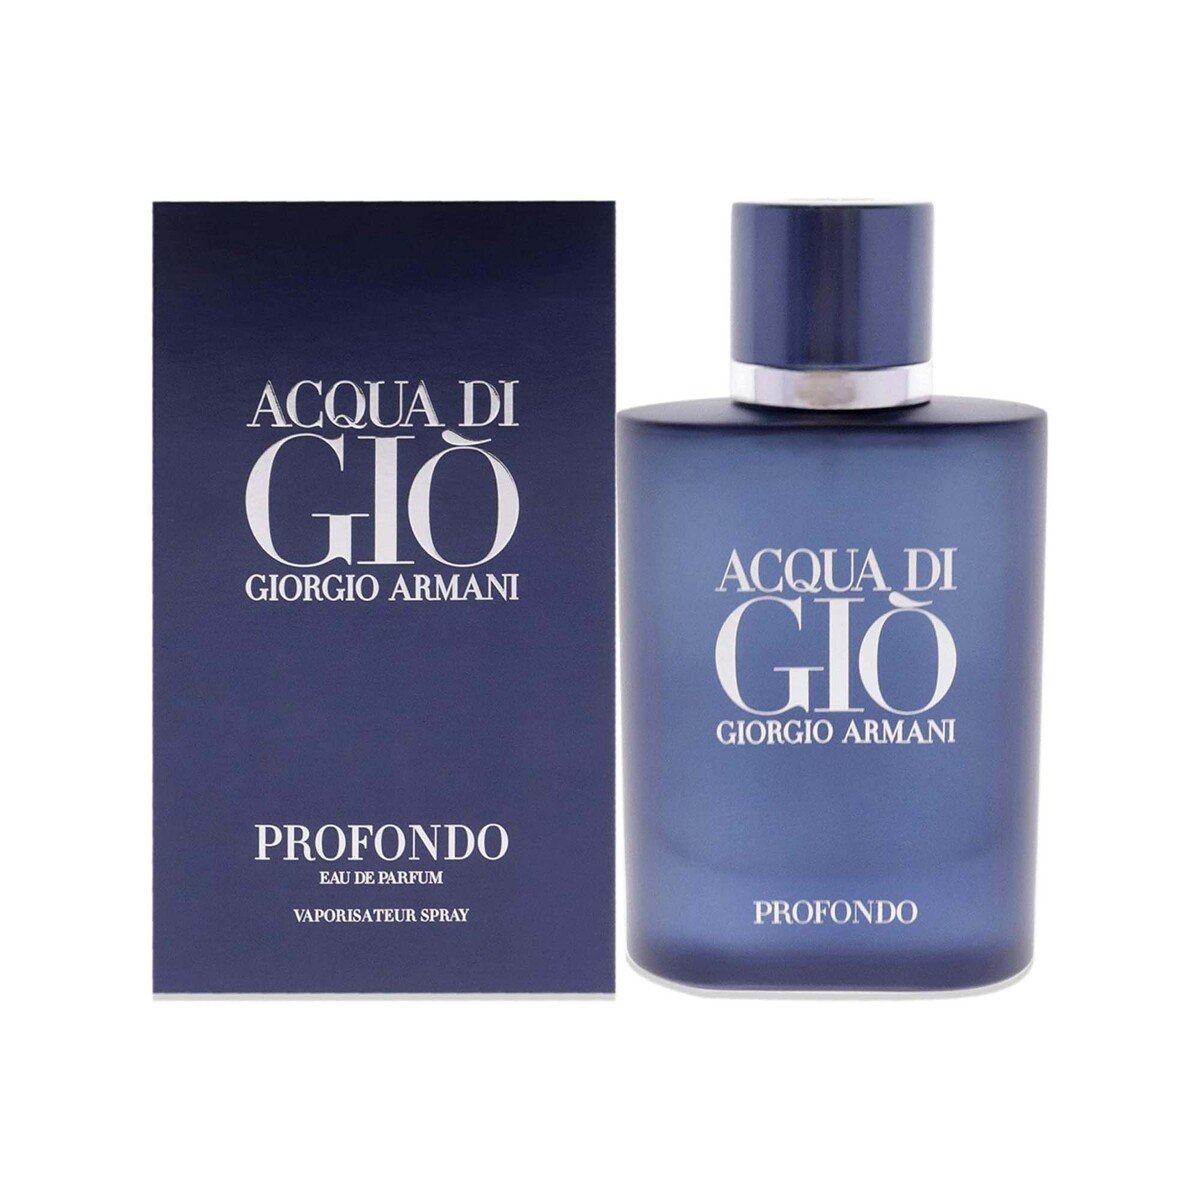 Giorgio Armani Acqua Di Gio Profondo Eau De Parfum For Men, 75ml